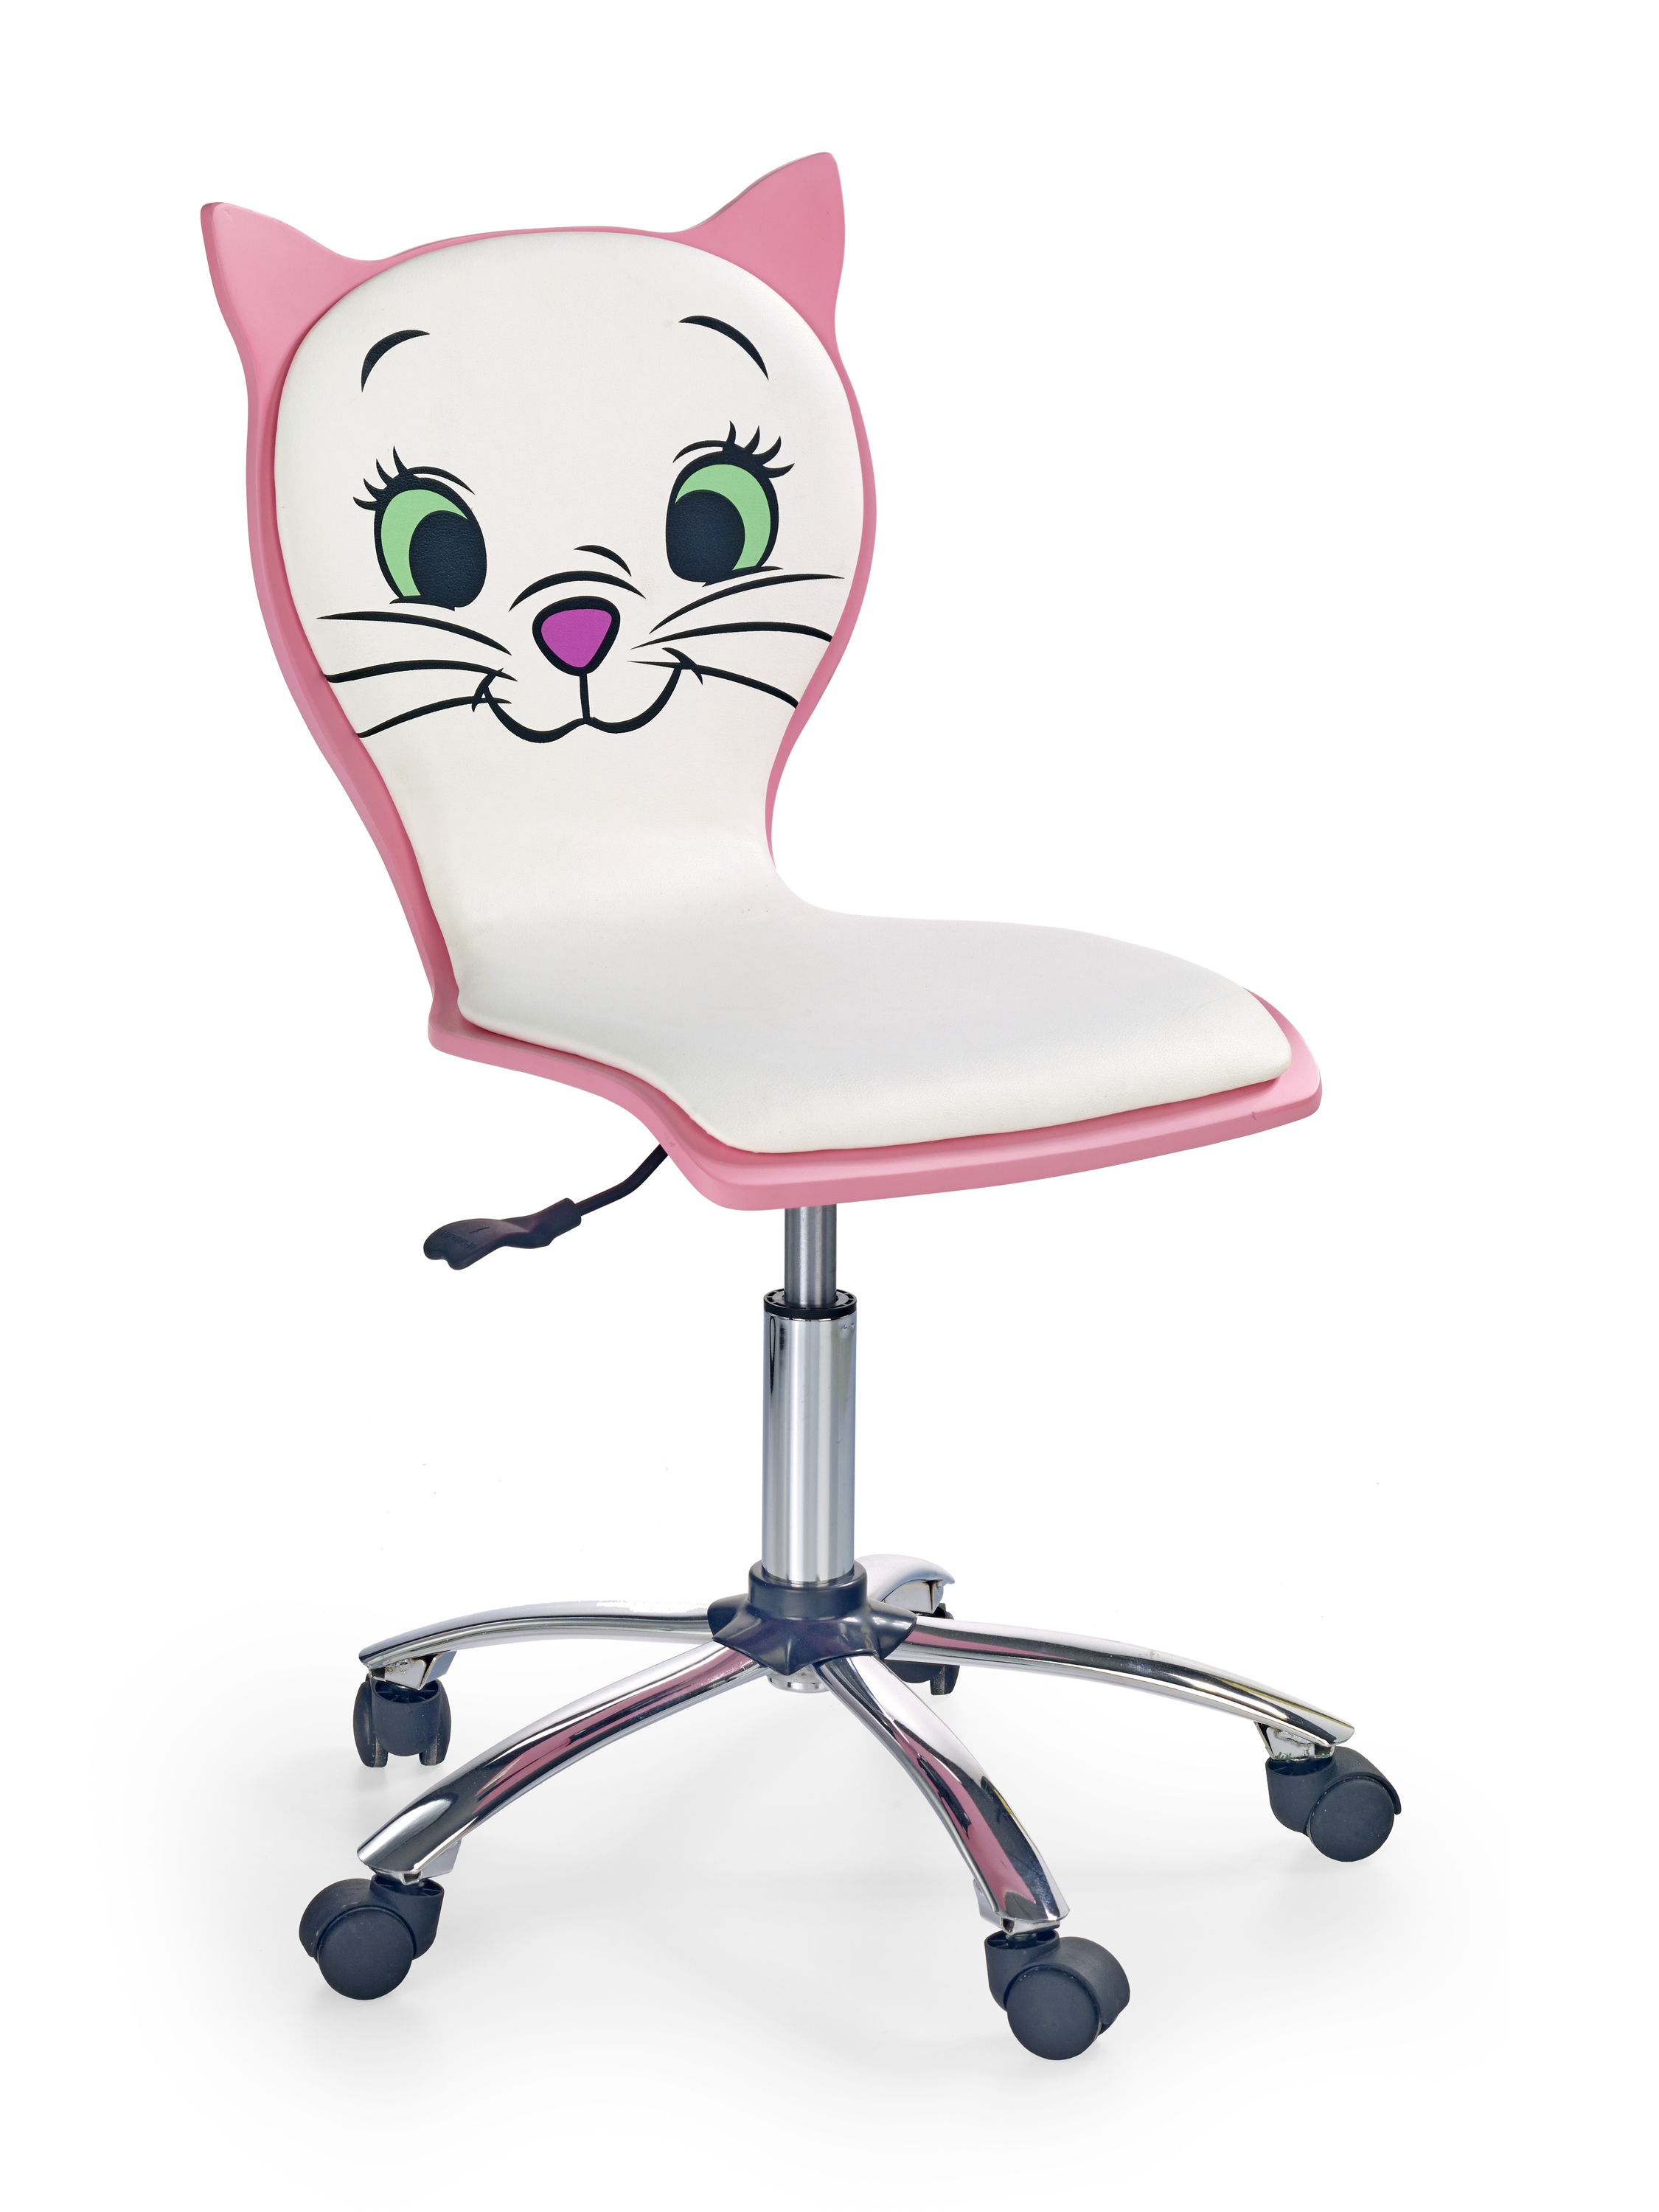 Kancelářske křeslo Kitty 2 - Bílý/Růžový Kancelářske křeslo kitty 2 - Bílý / Růžová